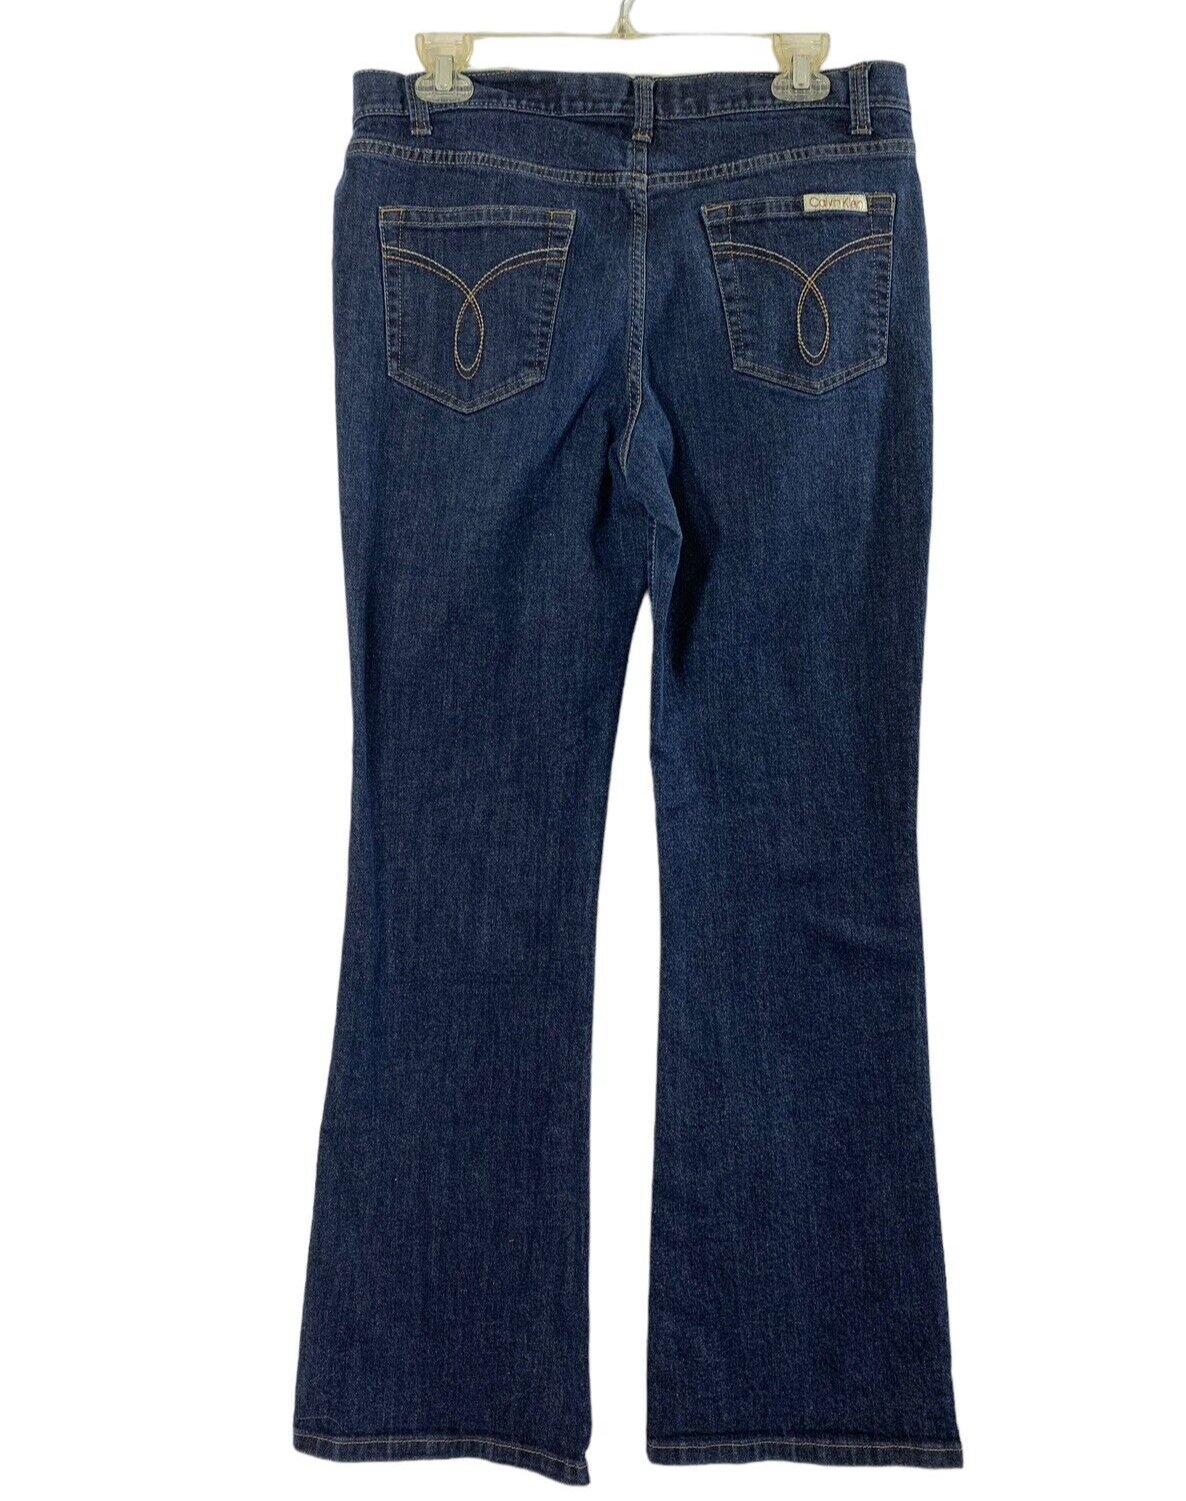 Calvin Klein Flare Jeans Womens 10 Dark Wash Denim Mid Rise | eBay